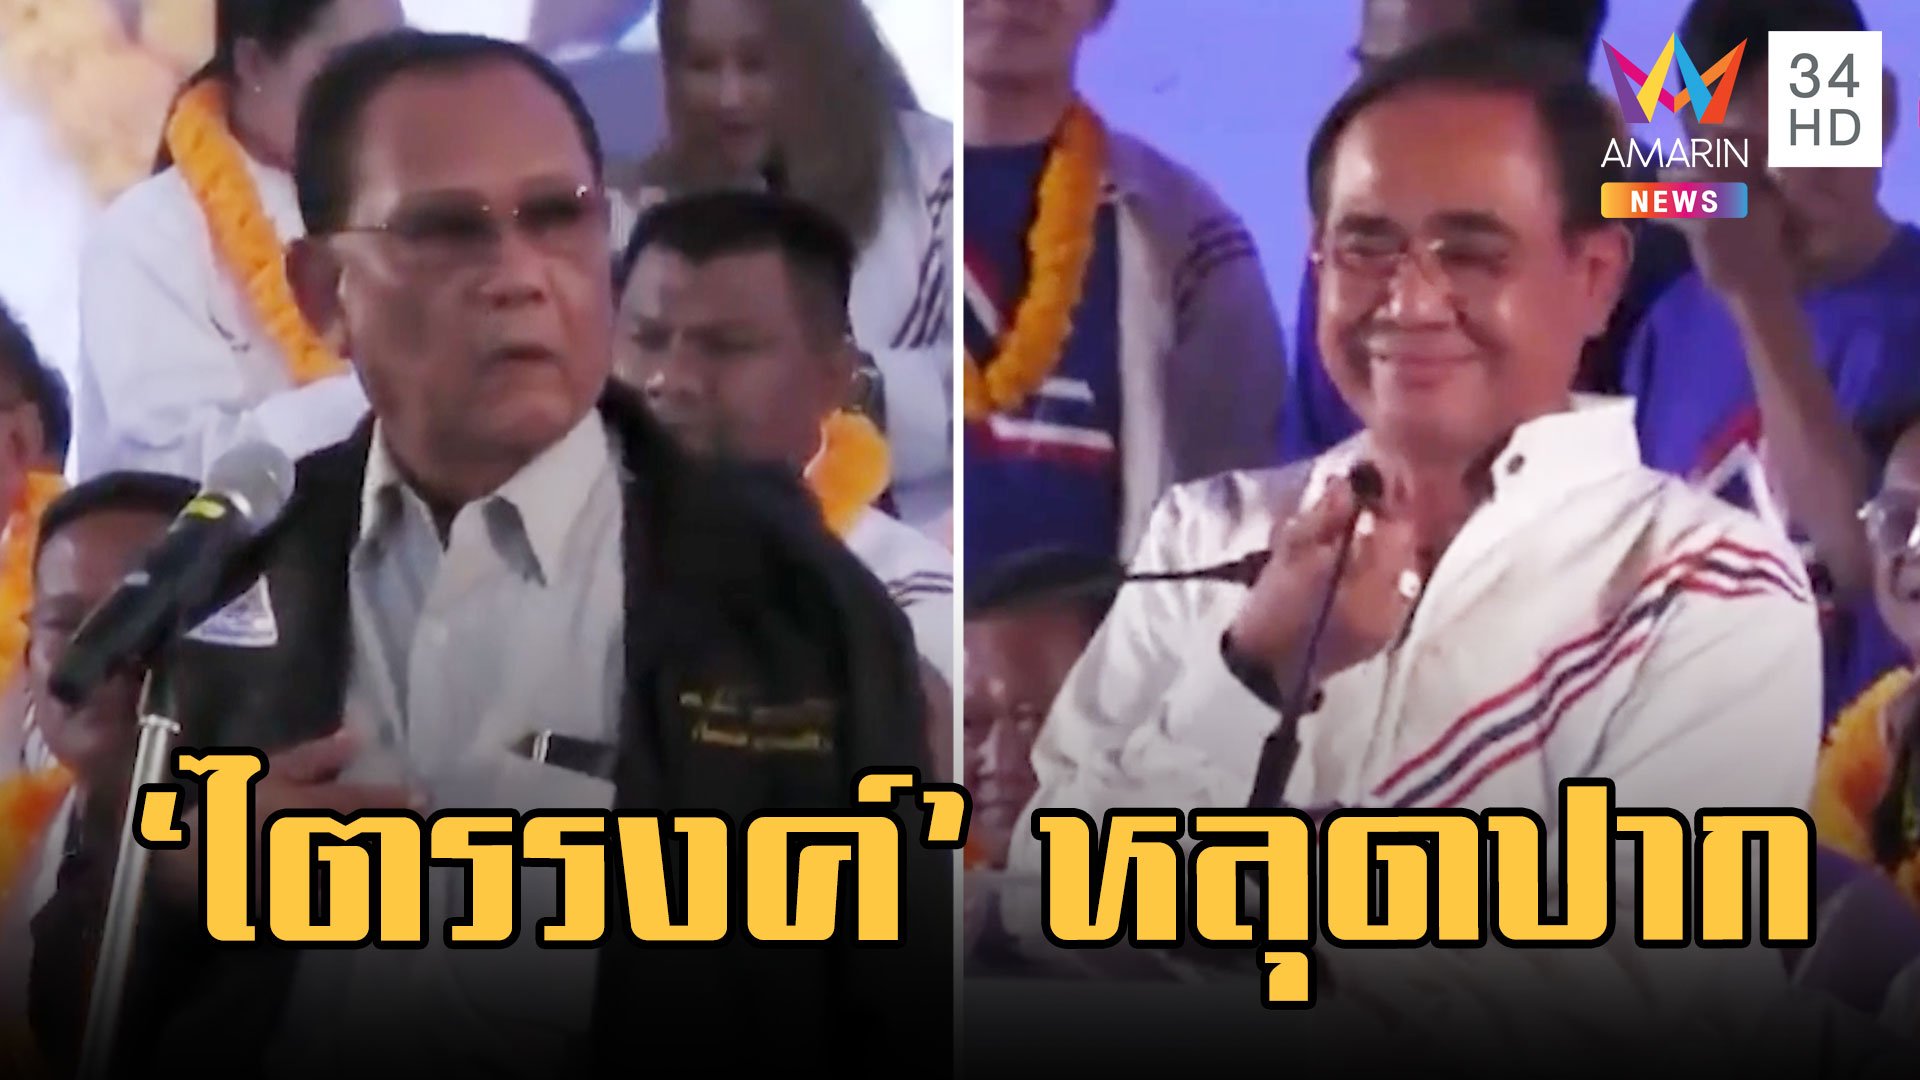 "ไตรรงค์" หลุดปากแนะเลือกไทยรักไทย "บิ๊กตู่" ปราศรัยโคราชครั้งแรก  | ข่าวเที่ยงอมรินทร์ | 27 ก.พ. 66 | AMARIN TVHD34